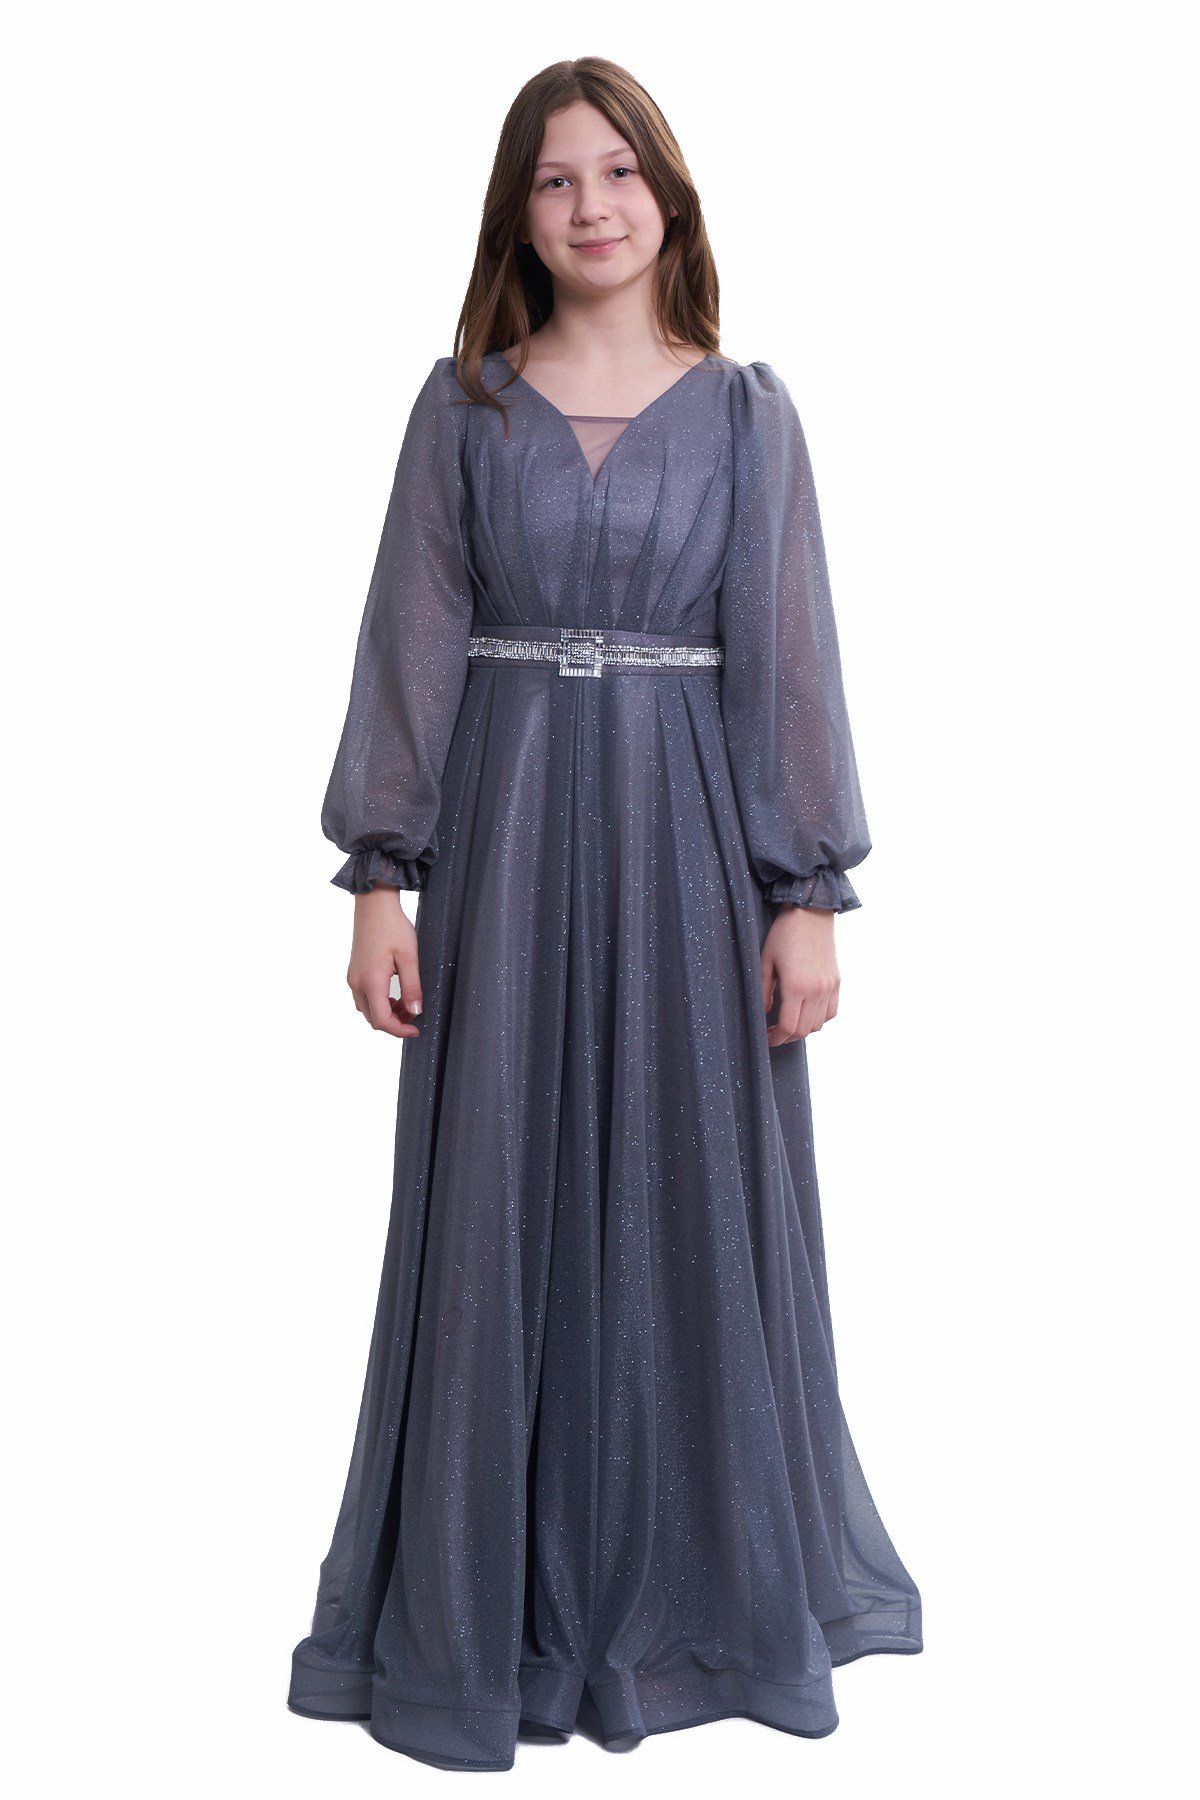 Kız Çocuk/Genç Uzun Kollu Simli Esnek Abiye Elbise Düğün Balo Mezuniyet  Özel Gün Koyu Gri 5305